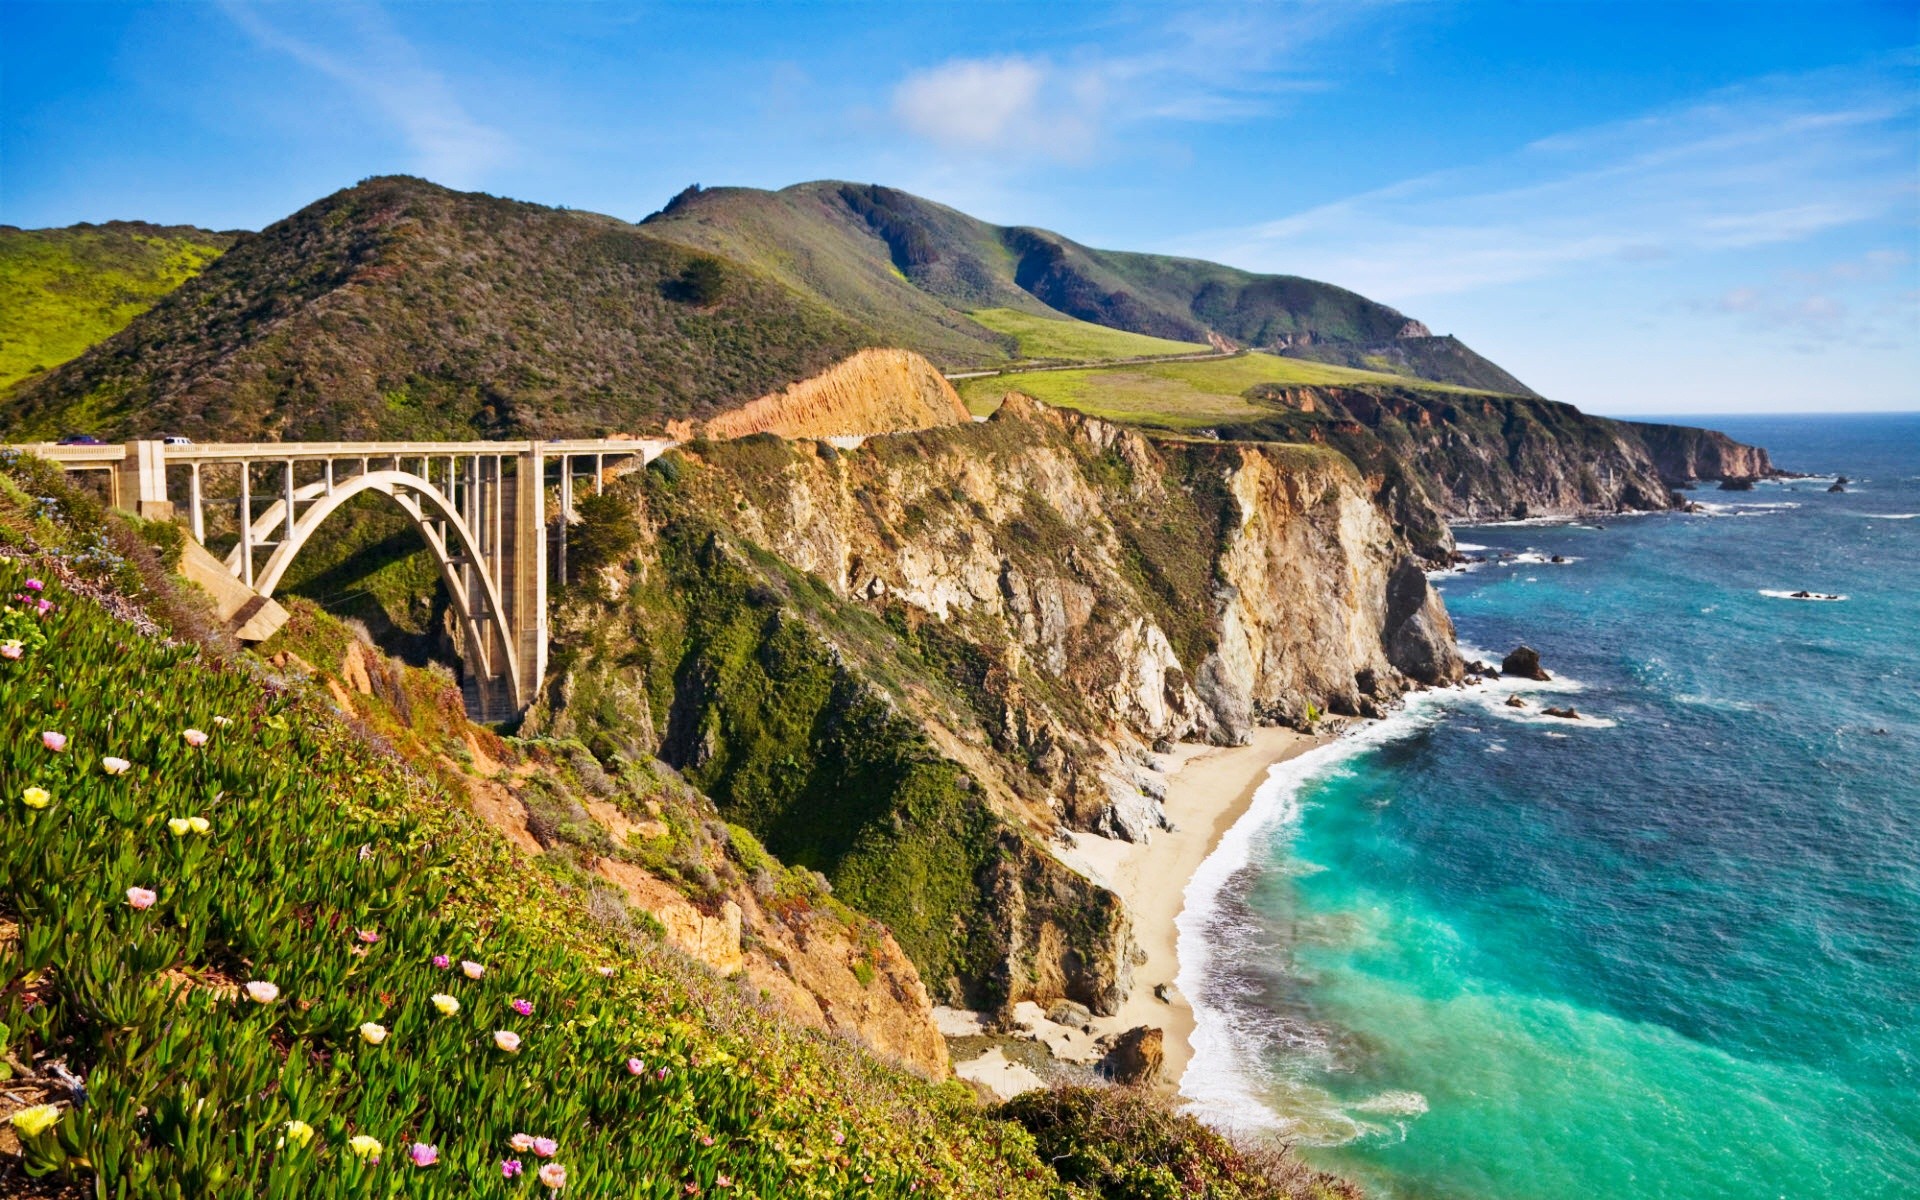 пейзажи, побережье, цветы, холмы, мосты, США, Калифорния, море, Big Sur Калифорния - обои на рабочий стол